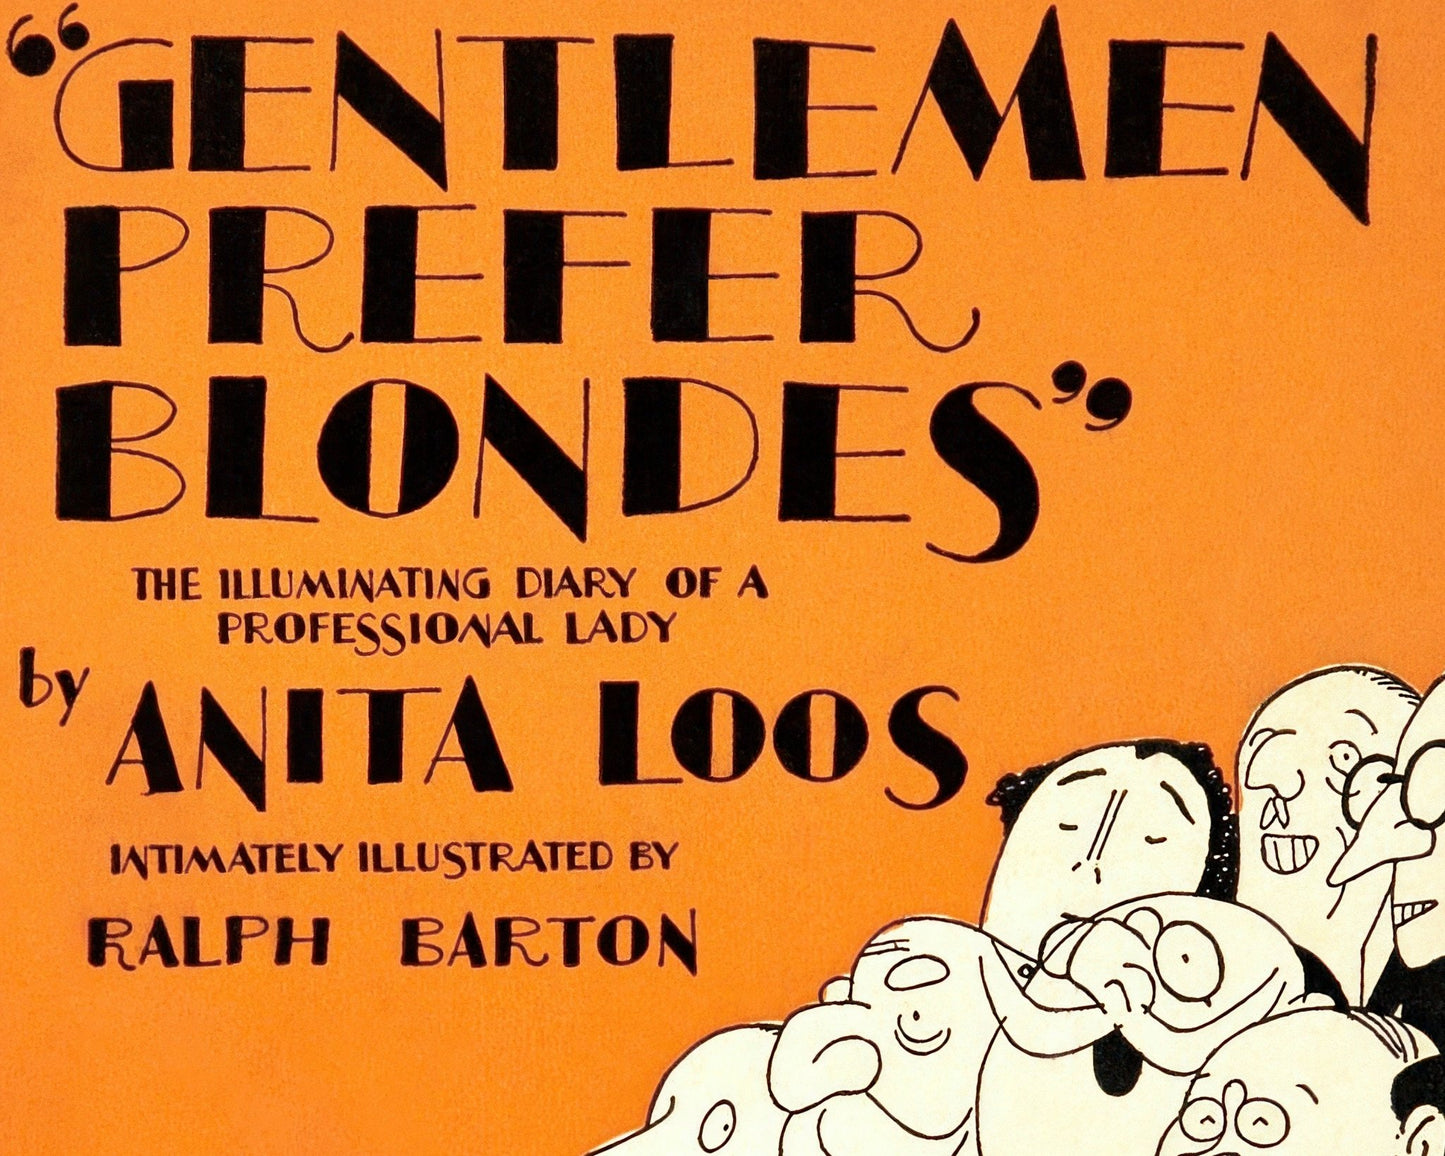 Ralph Barton "Gentlemen Prefer Blondes" (c.1926) - Mabon Gallery